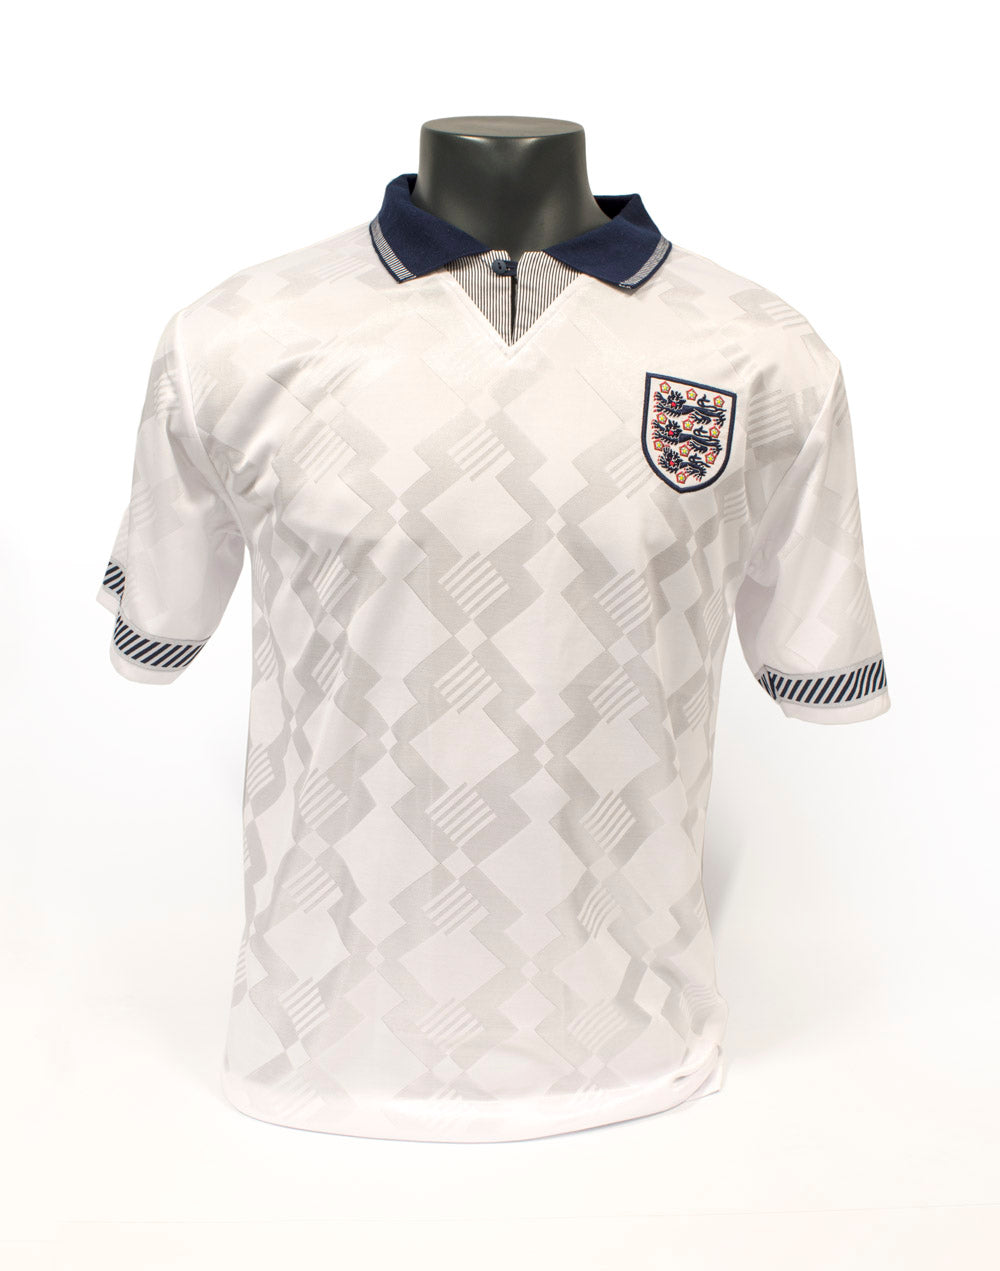 Paul Gascoigne Signed England Shirt - Replica 